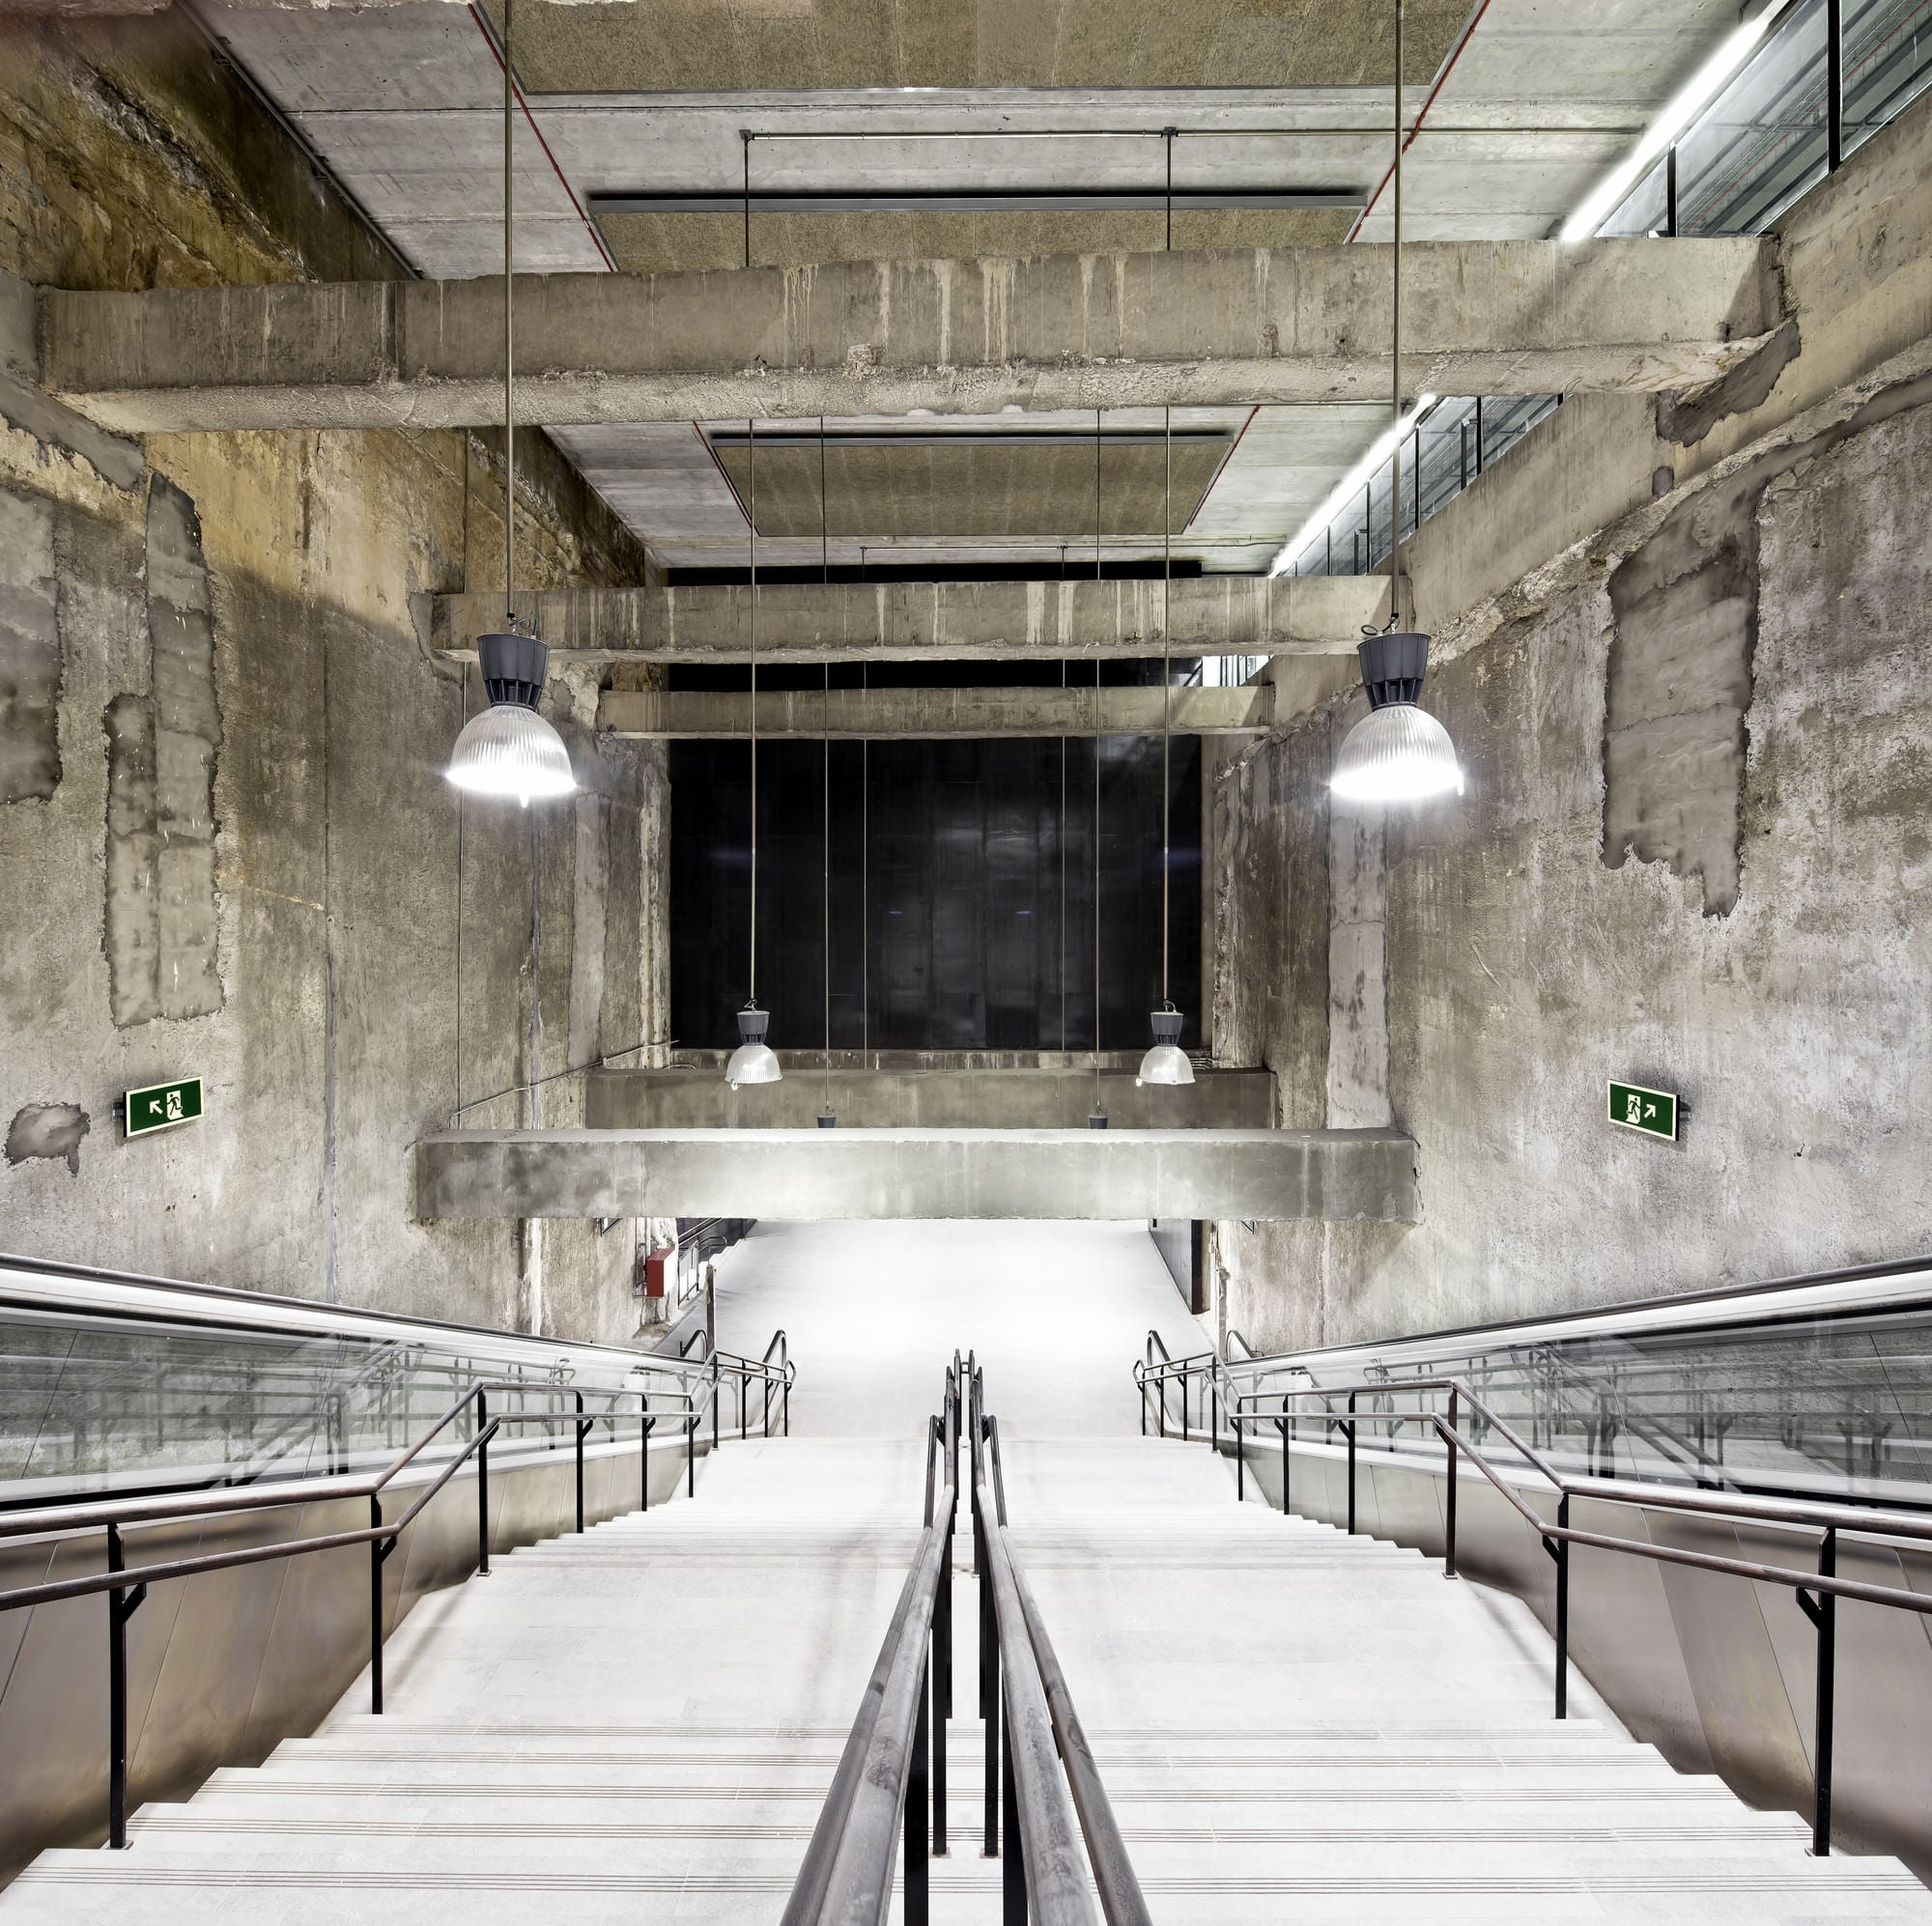 Arquitecturas Cerámicas  3 metro stations - Arquitecturas Cerámicas